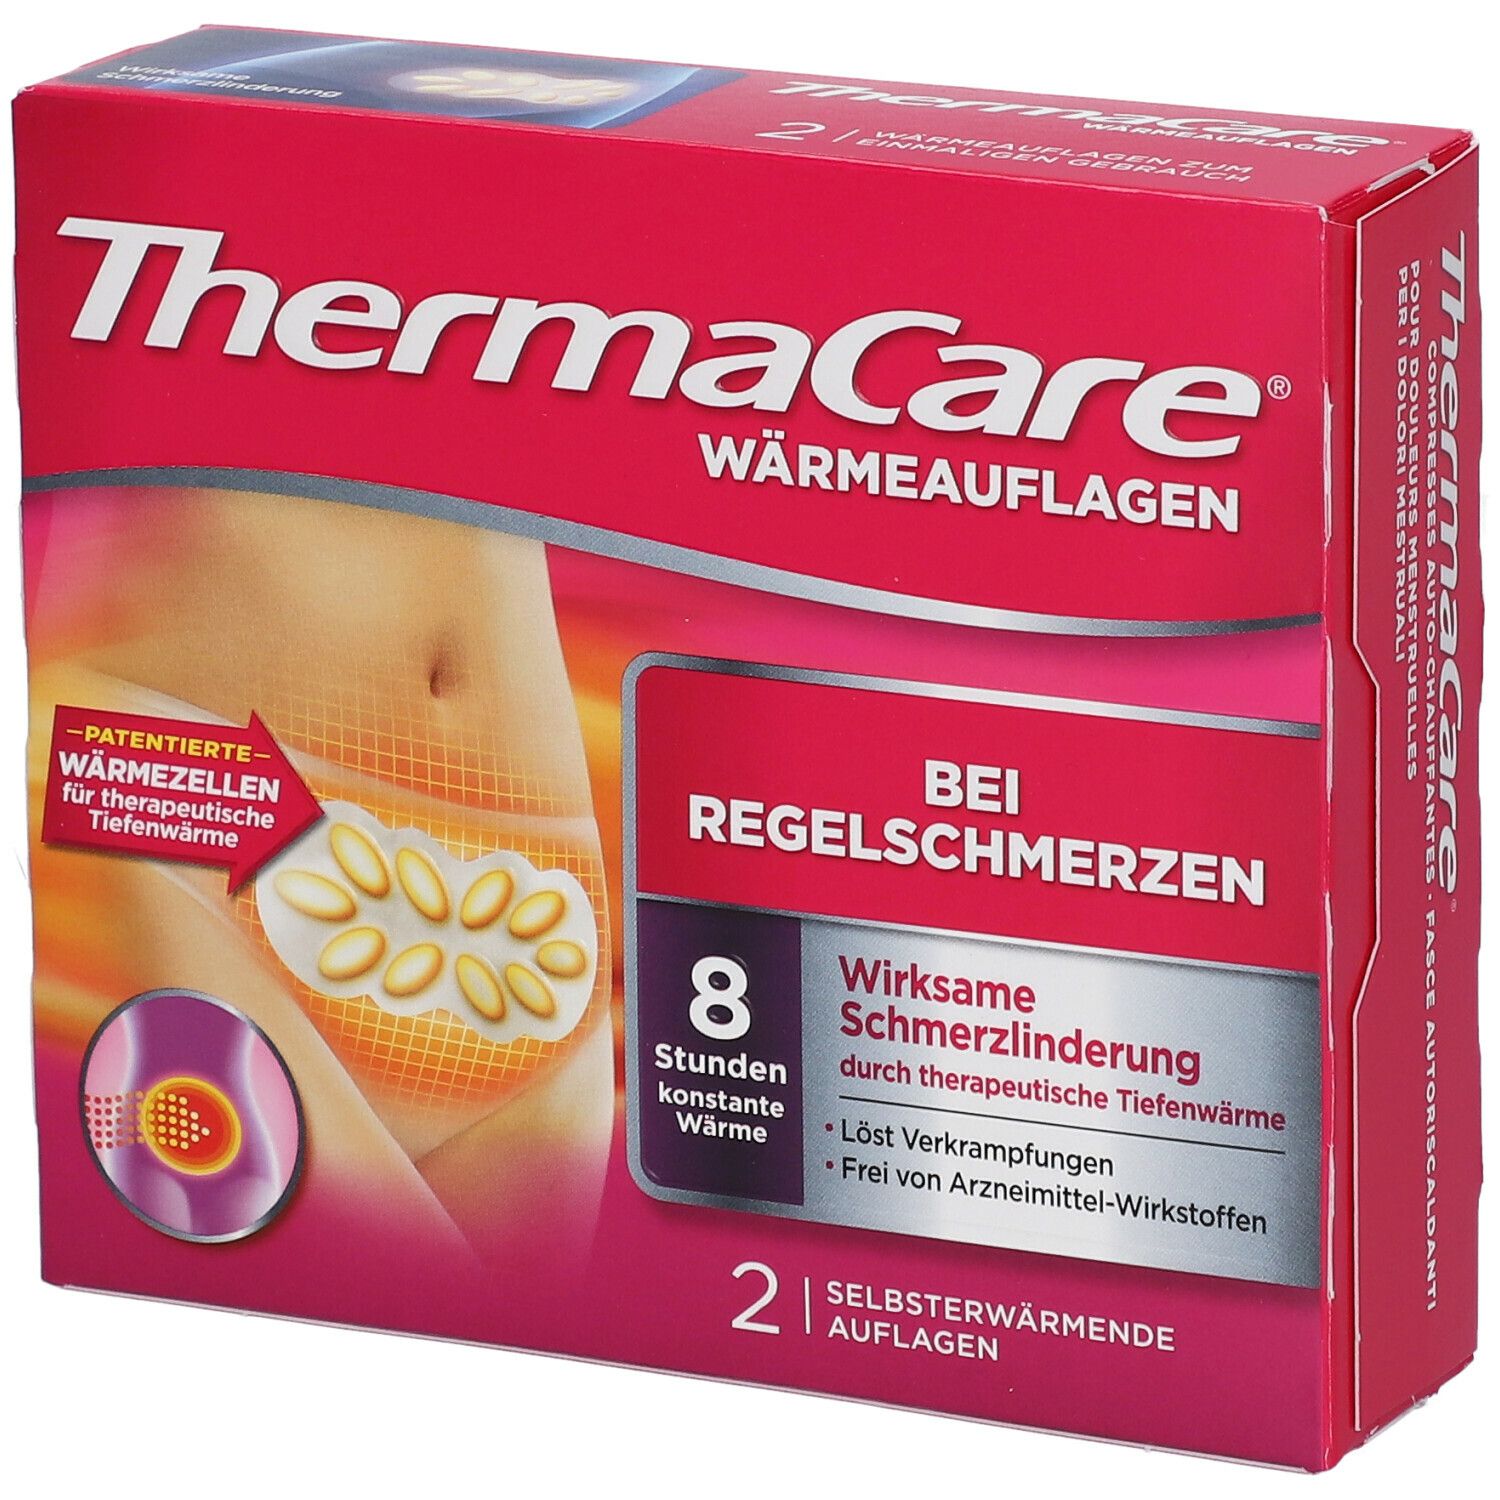 ThermaCare® Wärmeauflagen bei Regelschmerzen